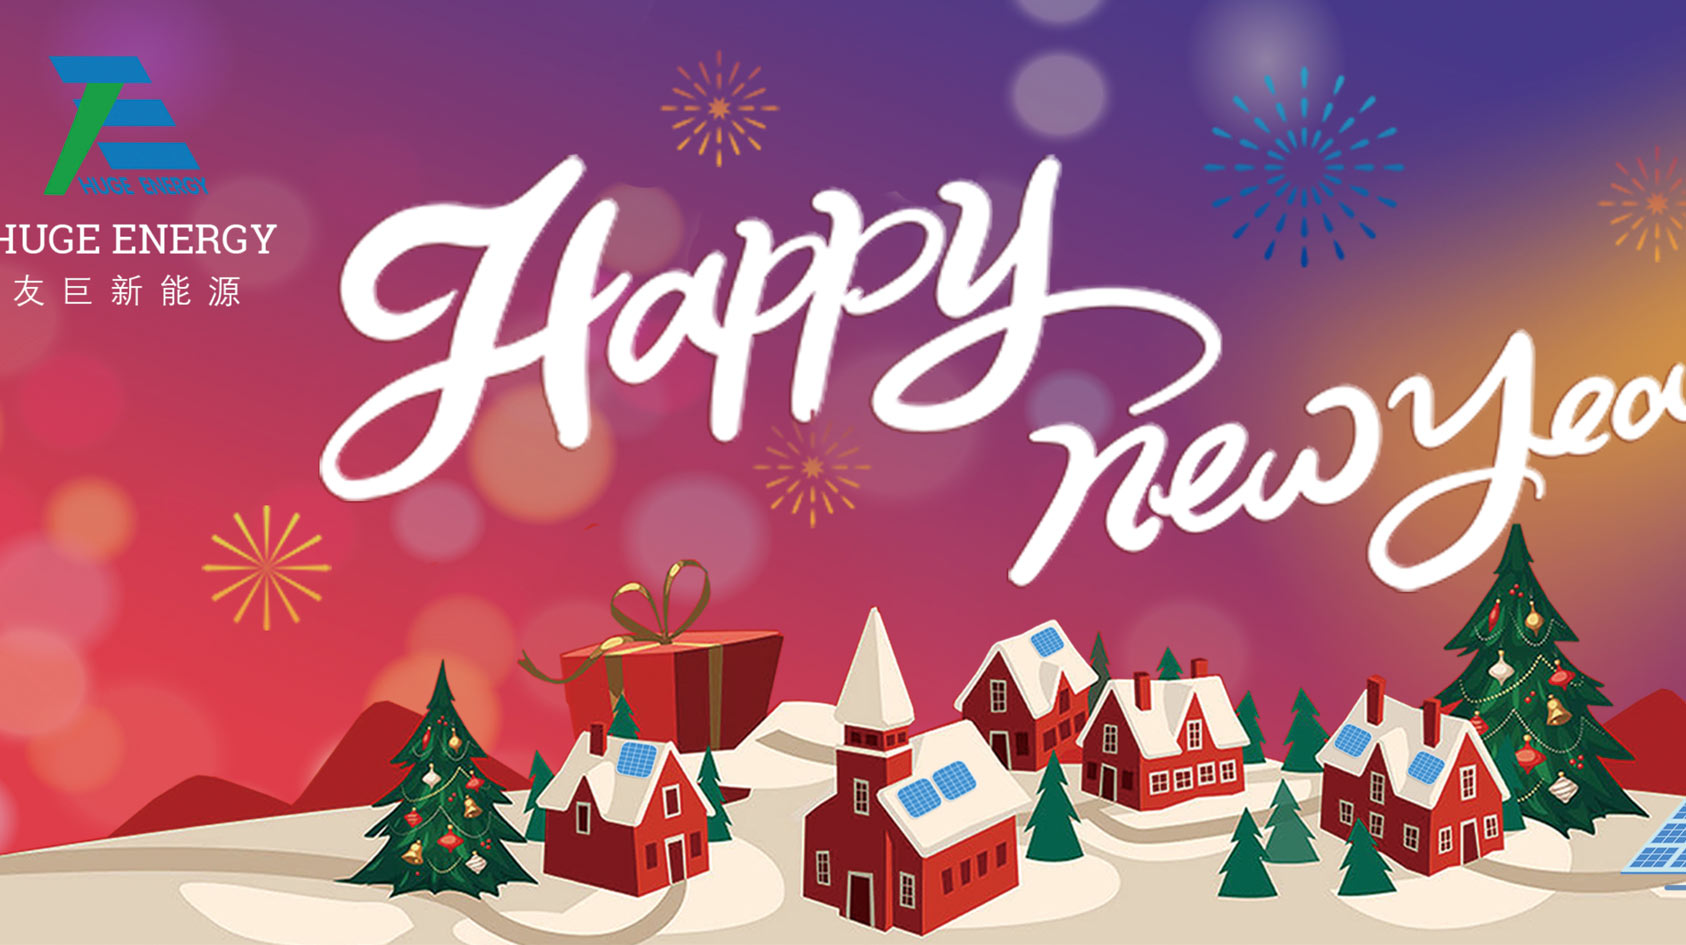 नए साल की शुरुआत में, विशाल ऊर्जा आपको नए साल की शुभकामनाएं देती है!